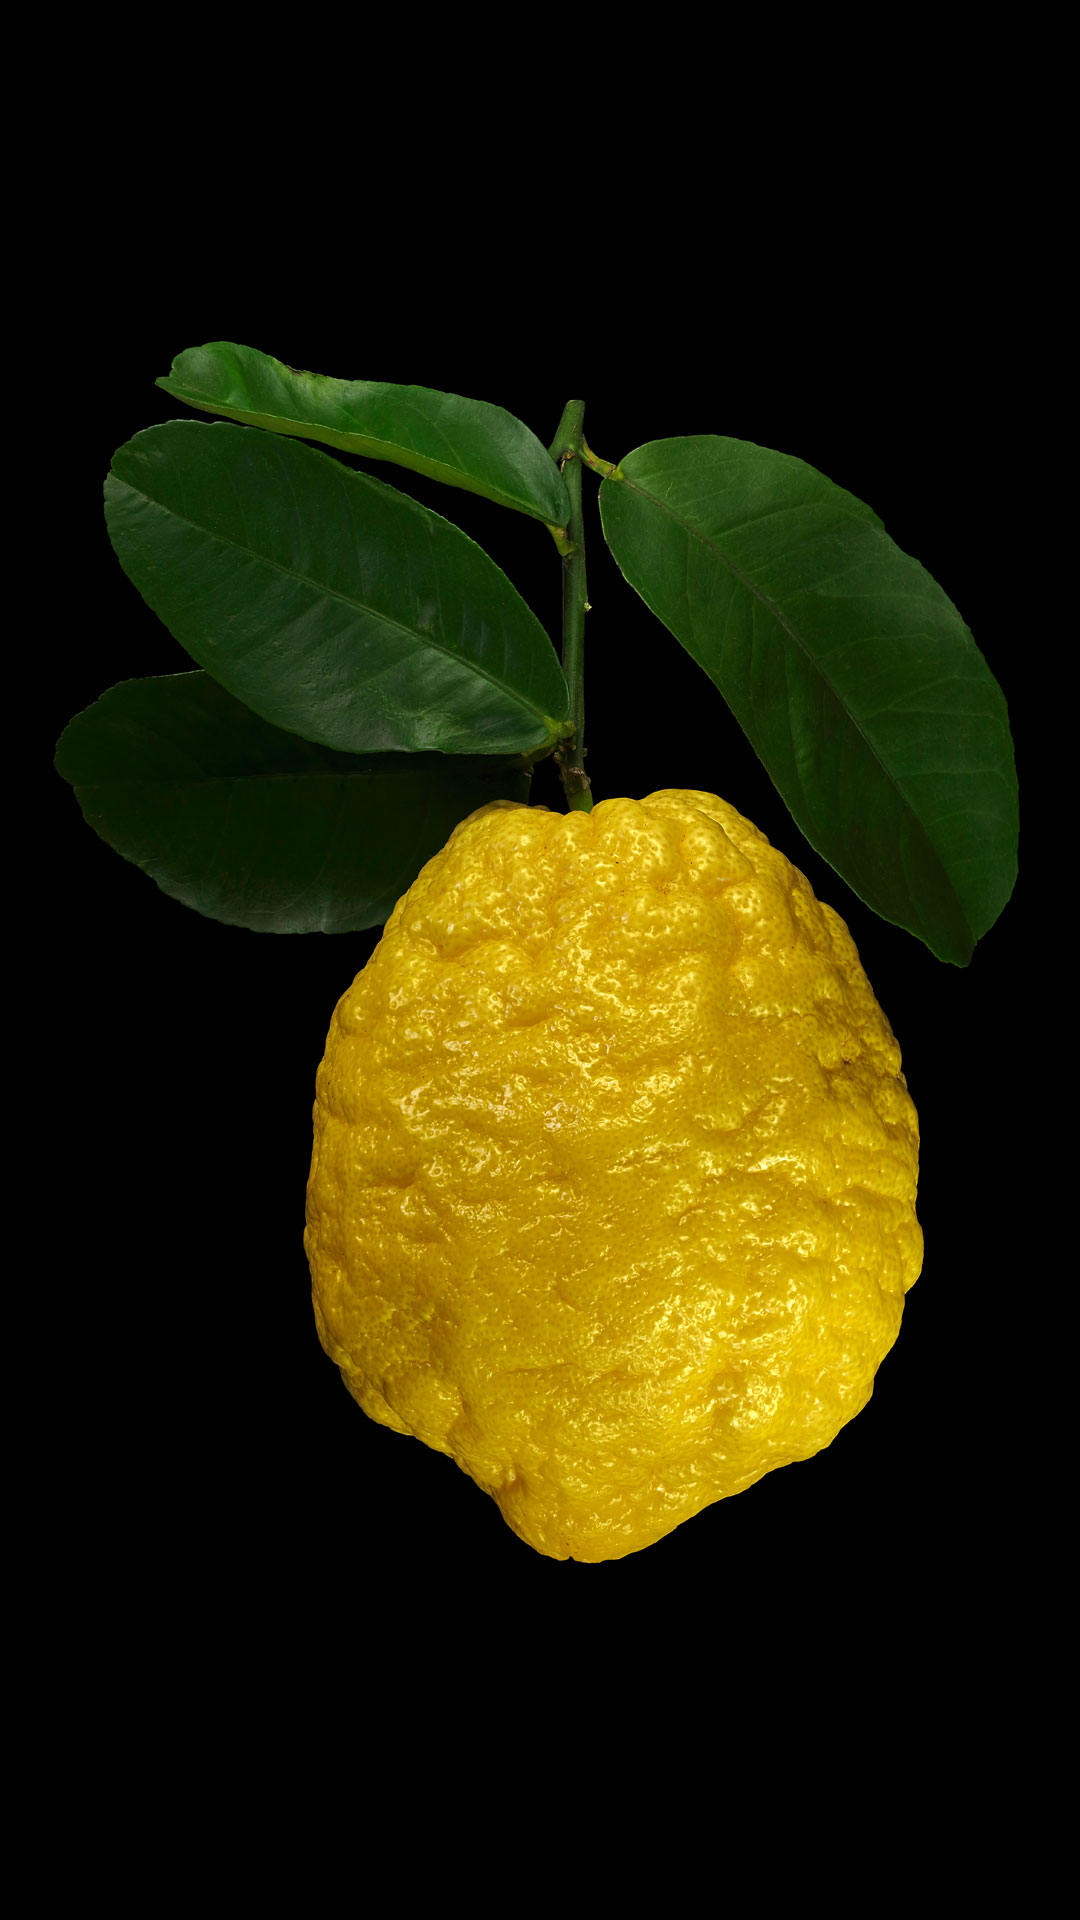 Die Zitronatzitrone: Citrus medica ‚Maxima‘